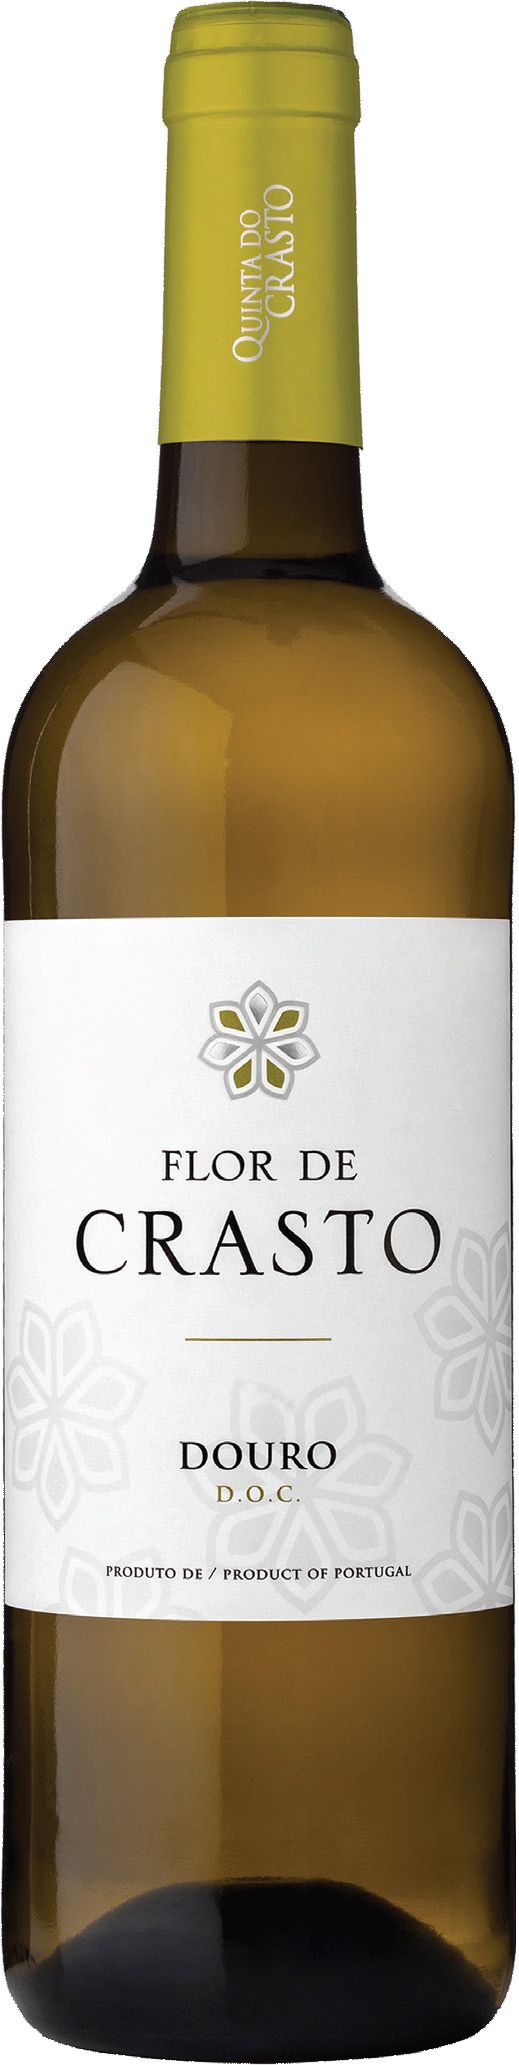 Quinta Do Crasto, Flor De Crasto Branco, 2015